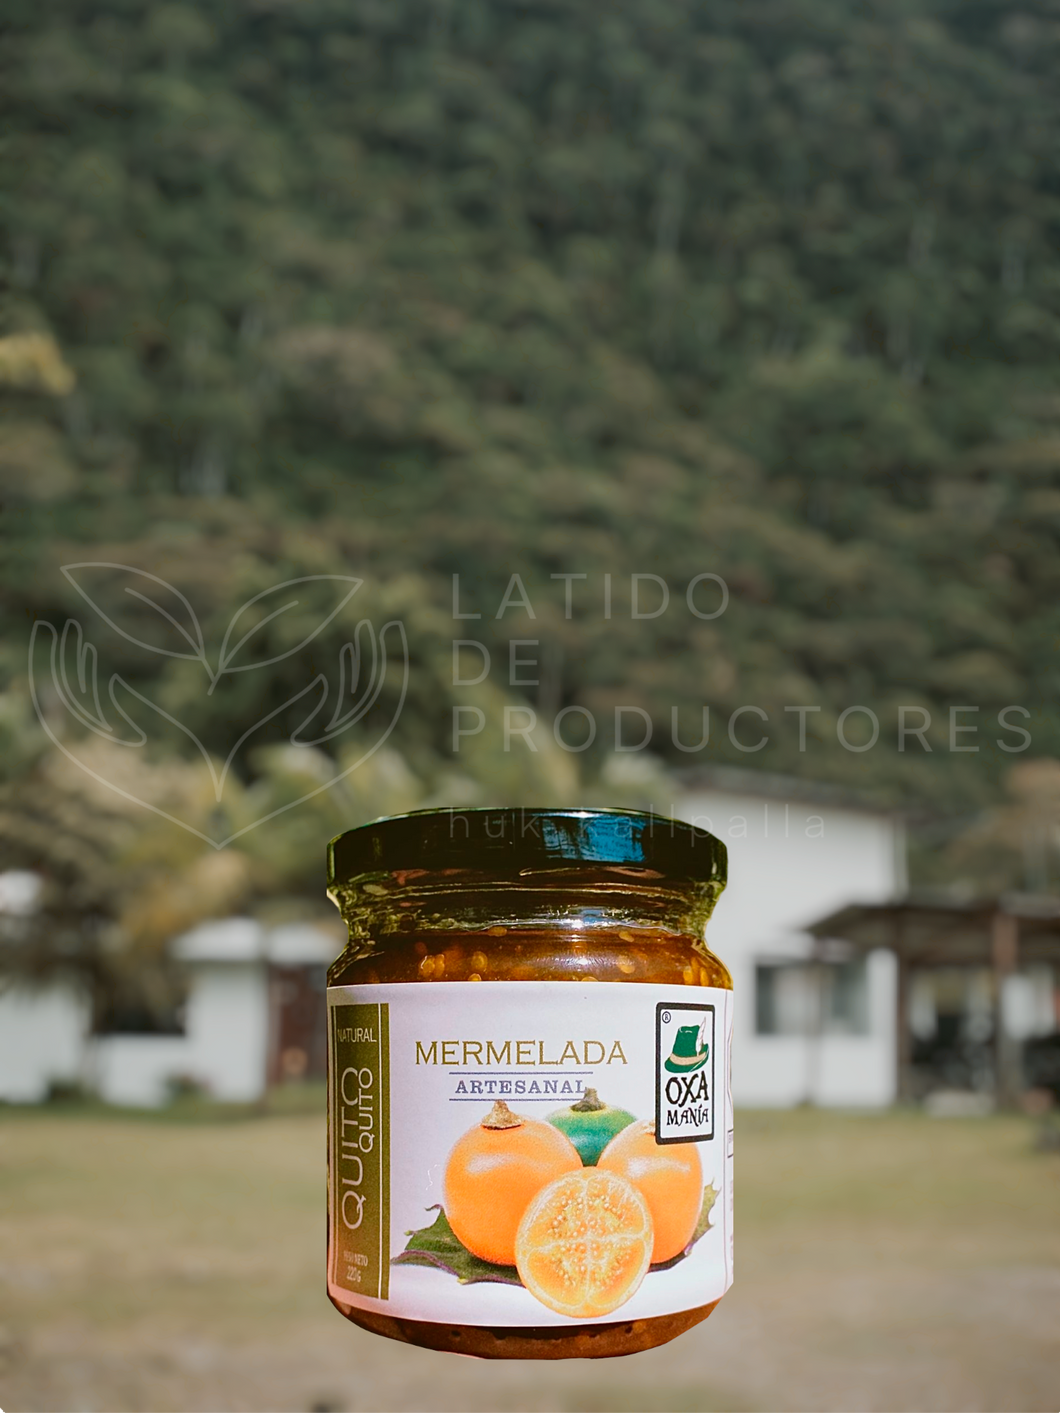 Mermelada Artesanal de Quito Quito